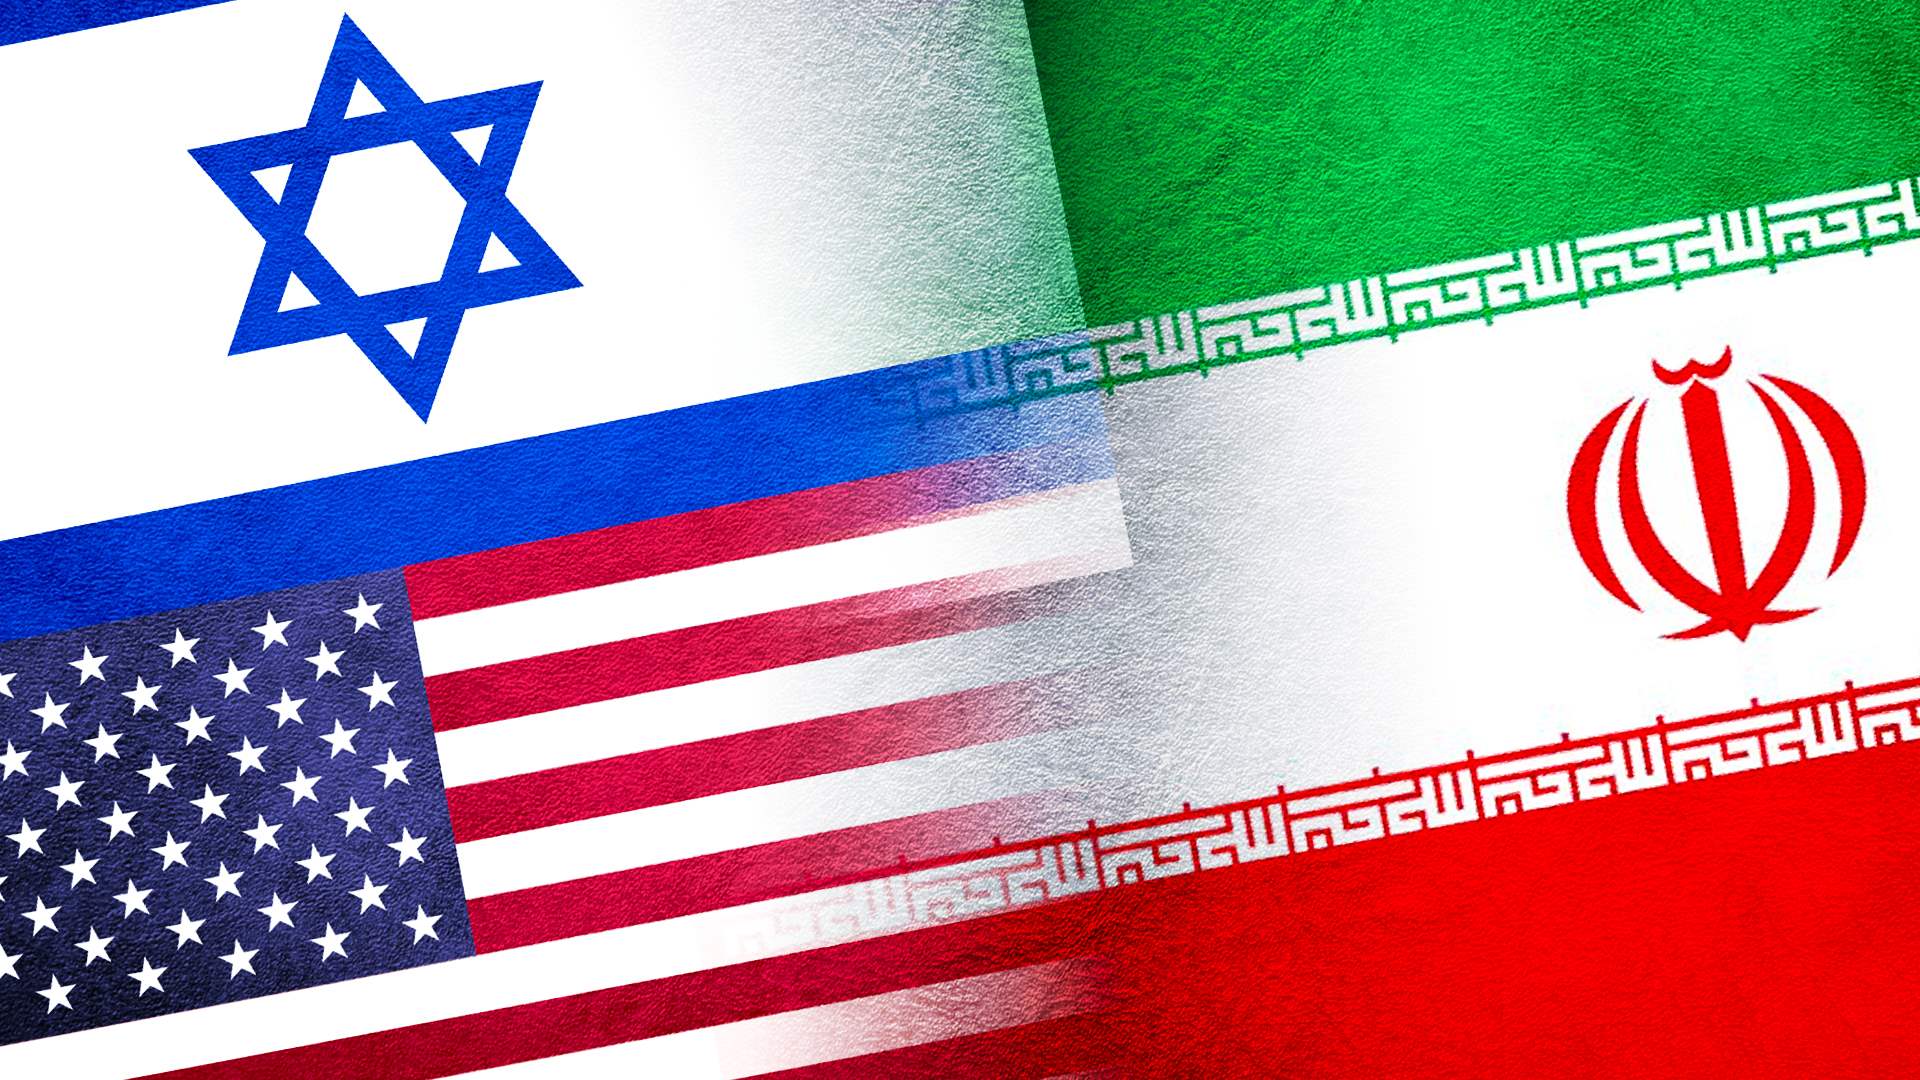 Iran says it gave warning before attacking Israel, US denies